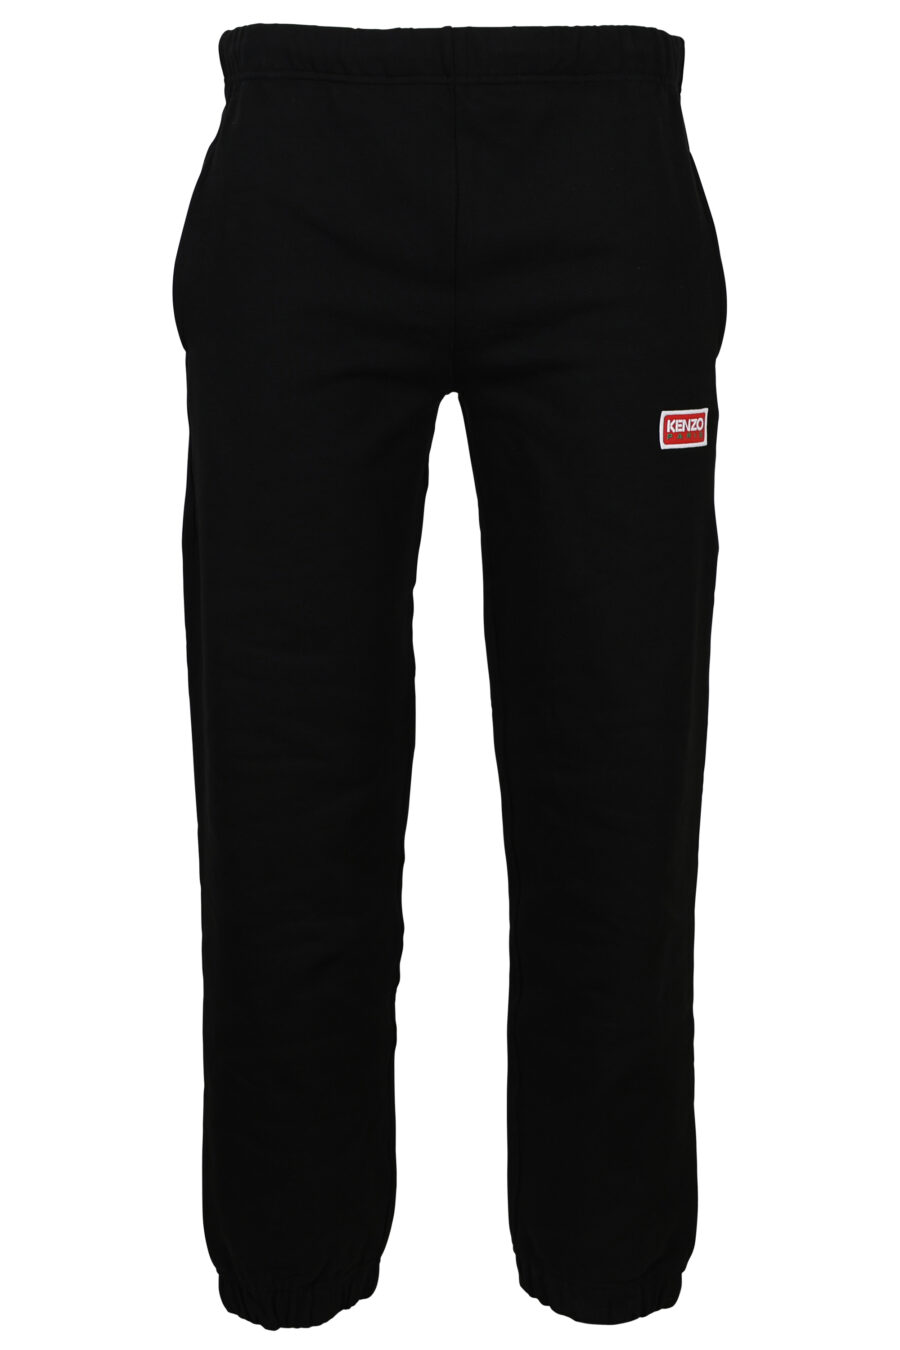 Pantalón de chándal negro con logo pequeño "kenzo paris" - 3612230535985